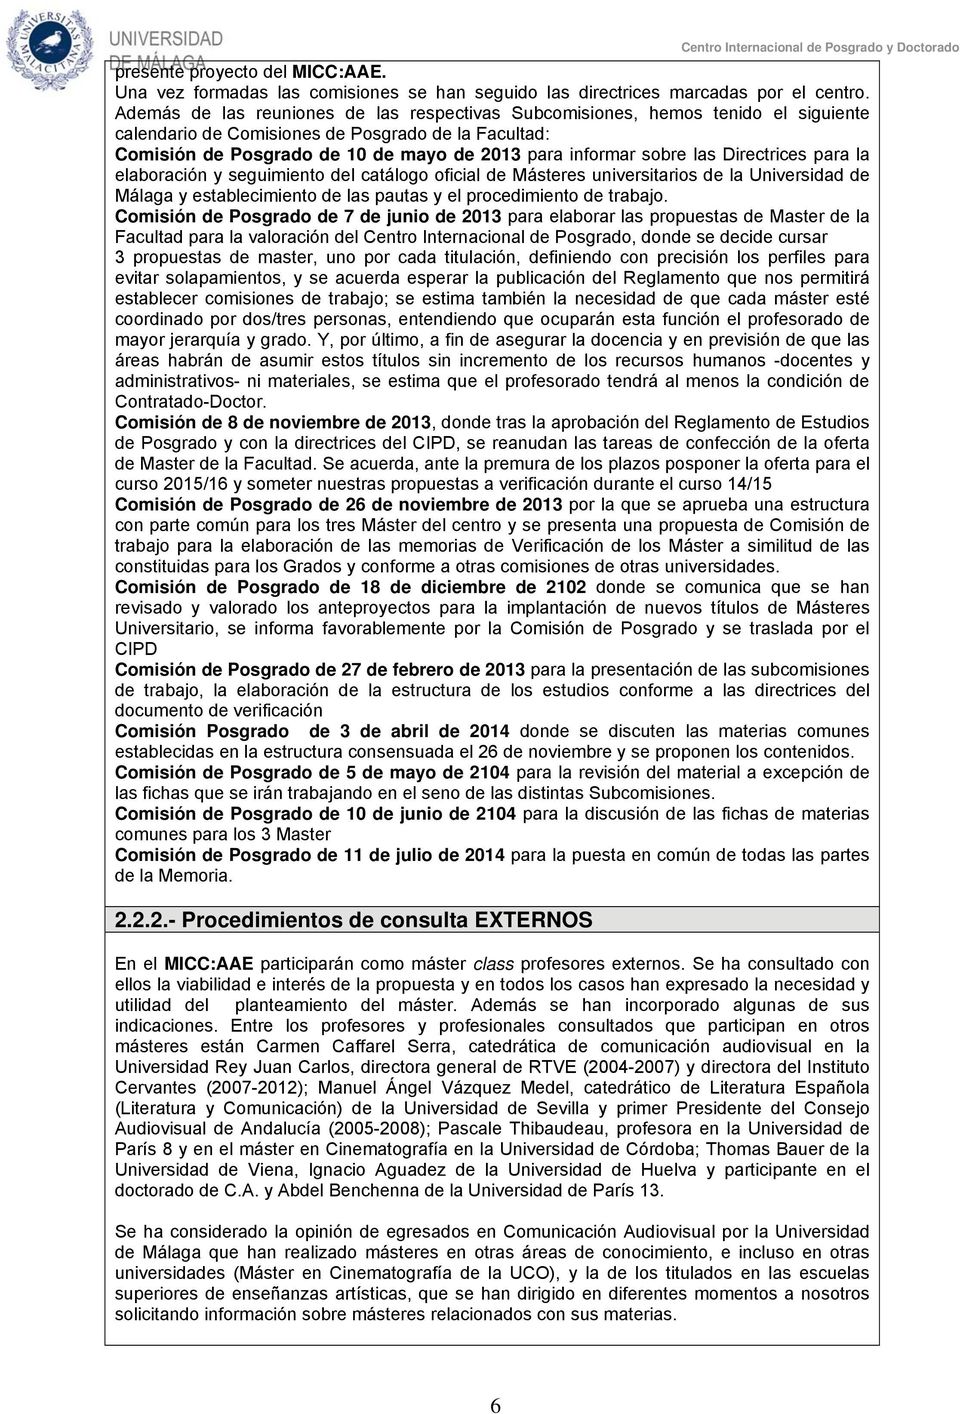 las Directrices para la elaboración y seguimiento del catálogo oficial de Másteres universitarios de la Universidad de Málaga y establecimiento de las pautas y el procedimiento de trabajo.